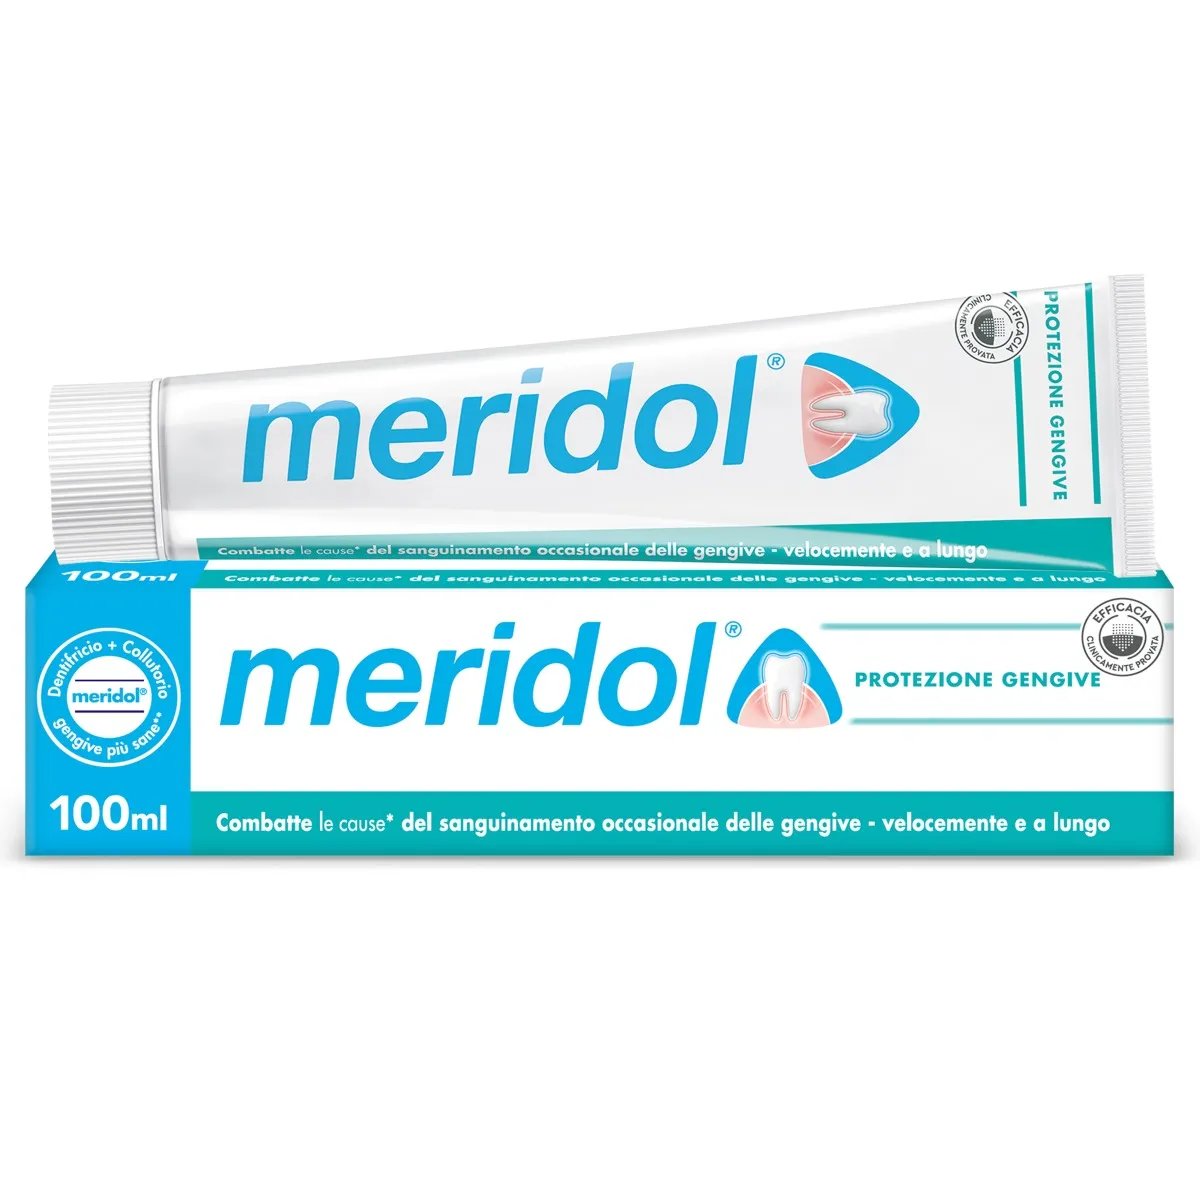 Meridol Dentifricio 100 ml Protezione Gengivale a Lunga Durata